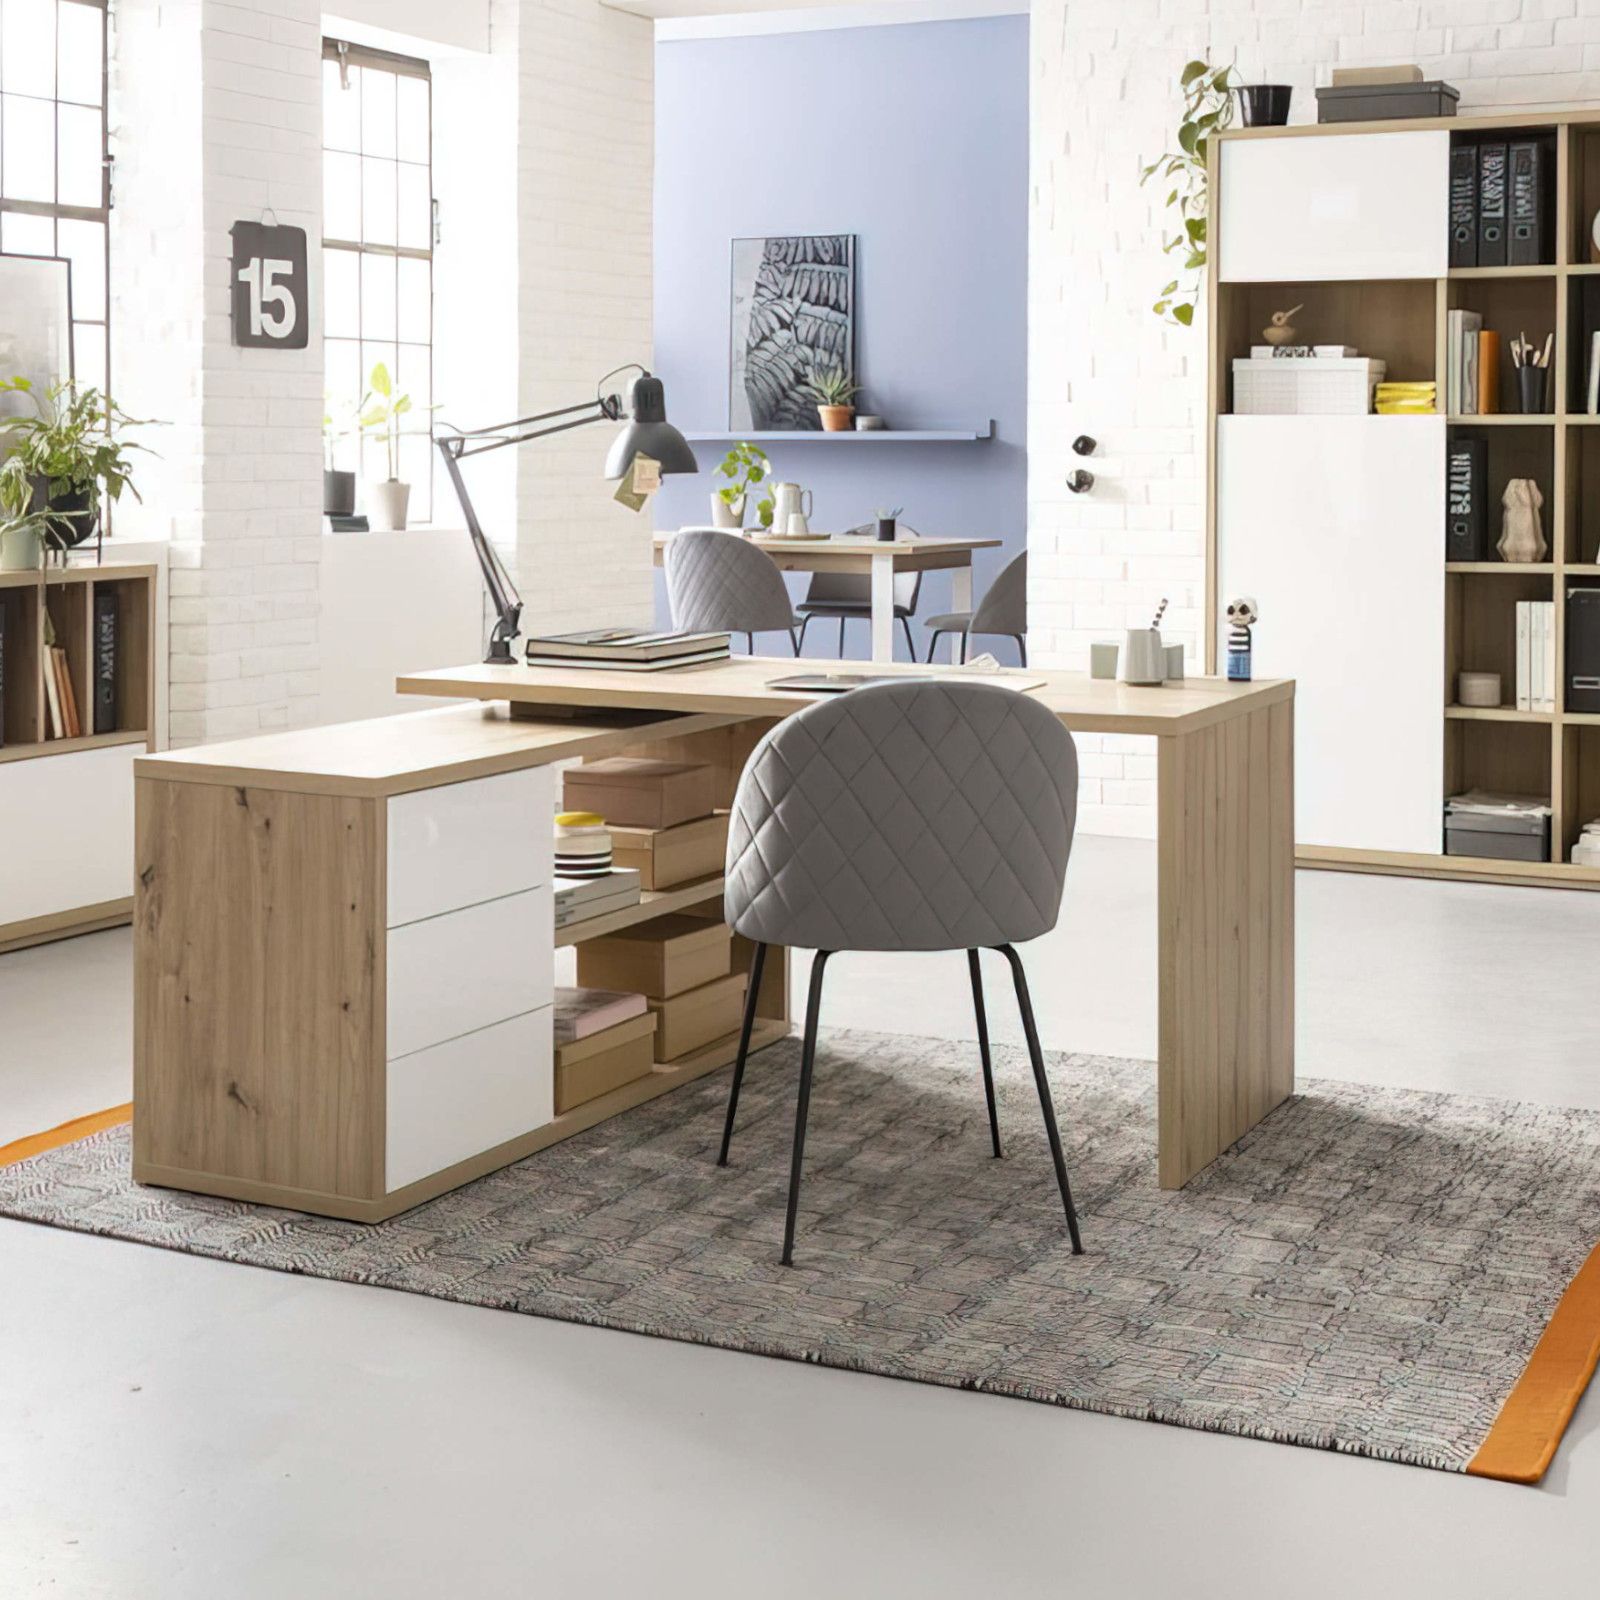 OpCorner, scrivania angolare da studio, regolabile in altezza, piano legno,  made in italy, personalizzabile nella dimensione e negli accessori 180x80  cm + 90x50 cm : : Prodotti Handmade